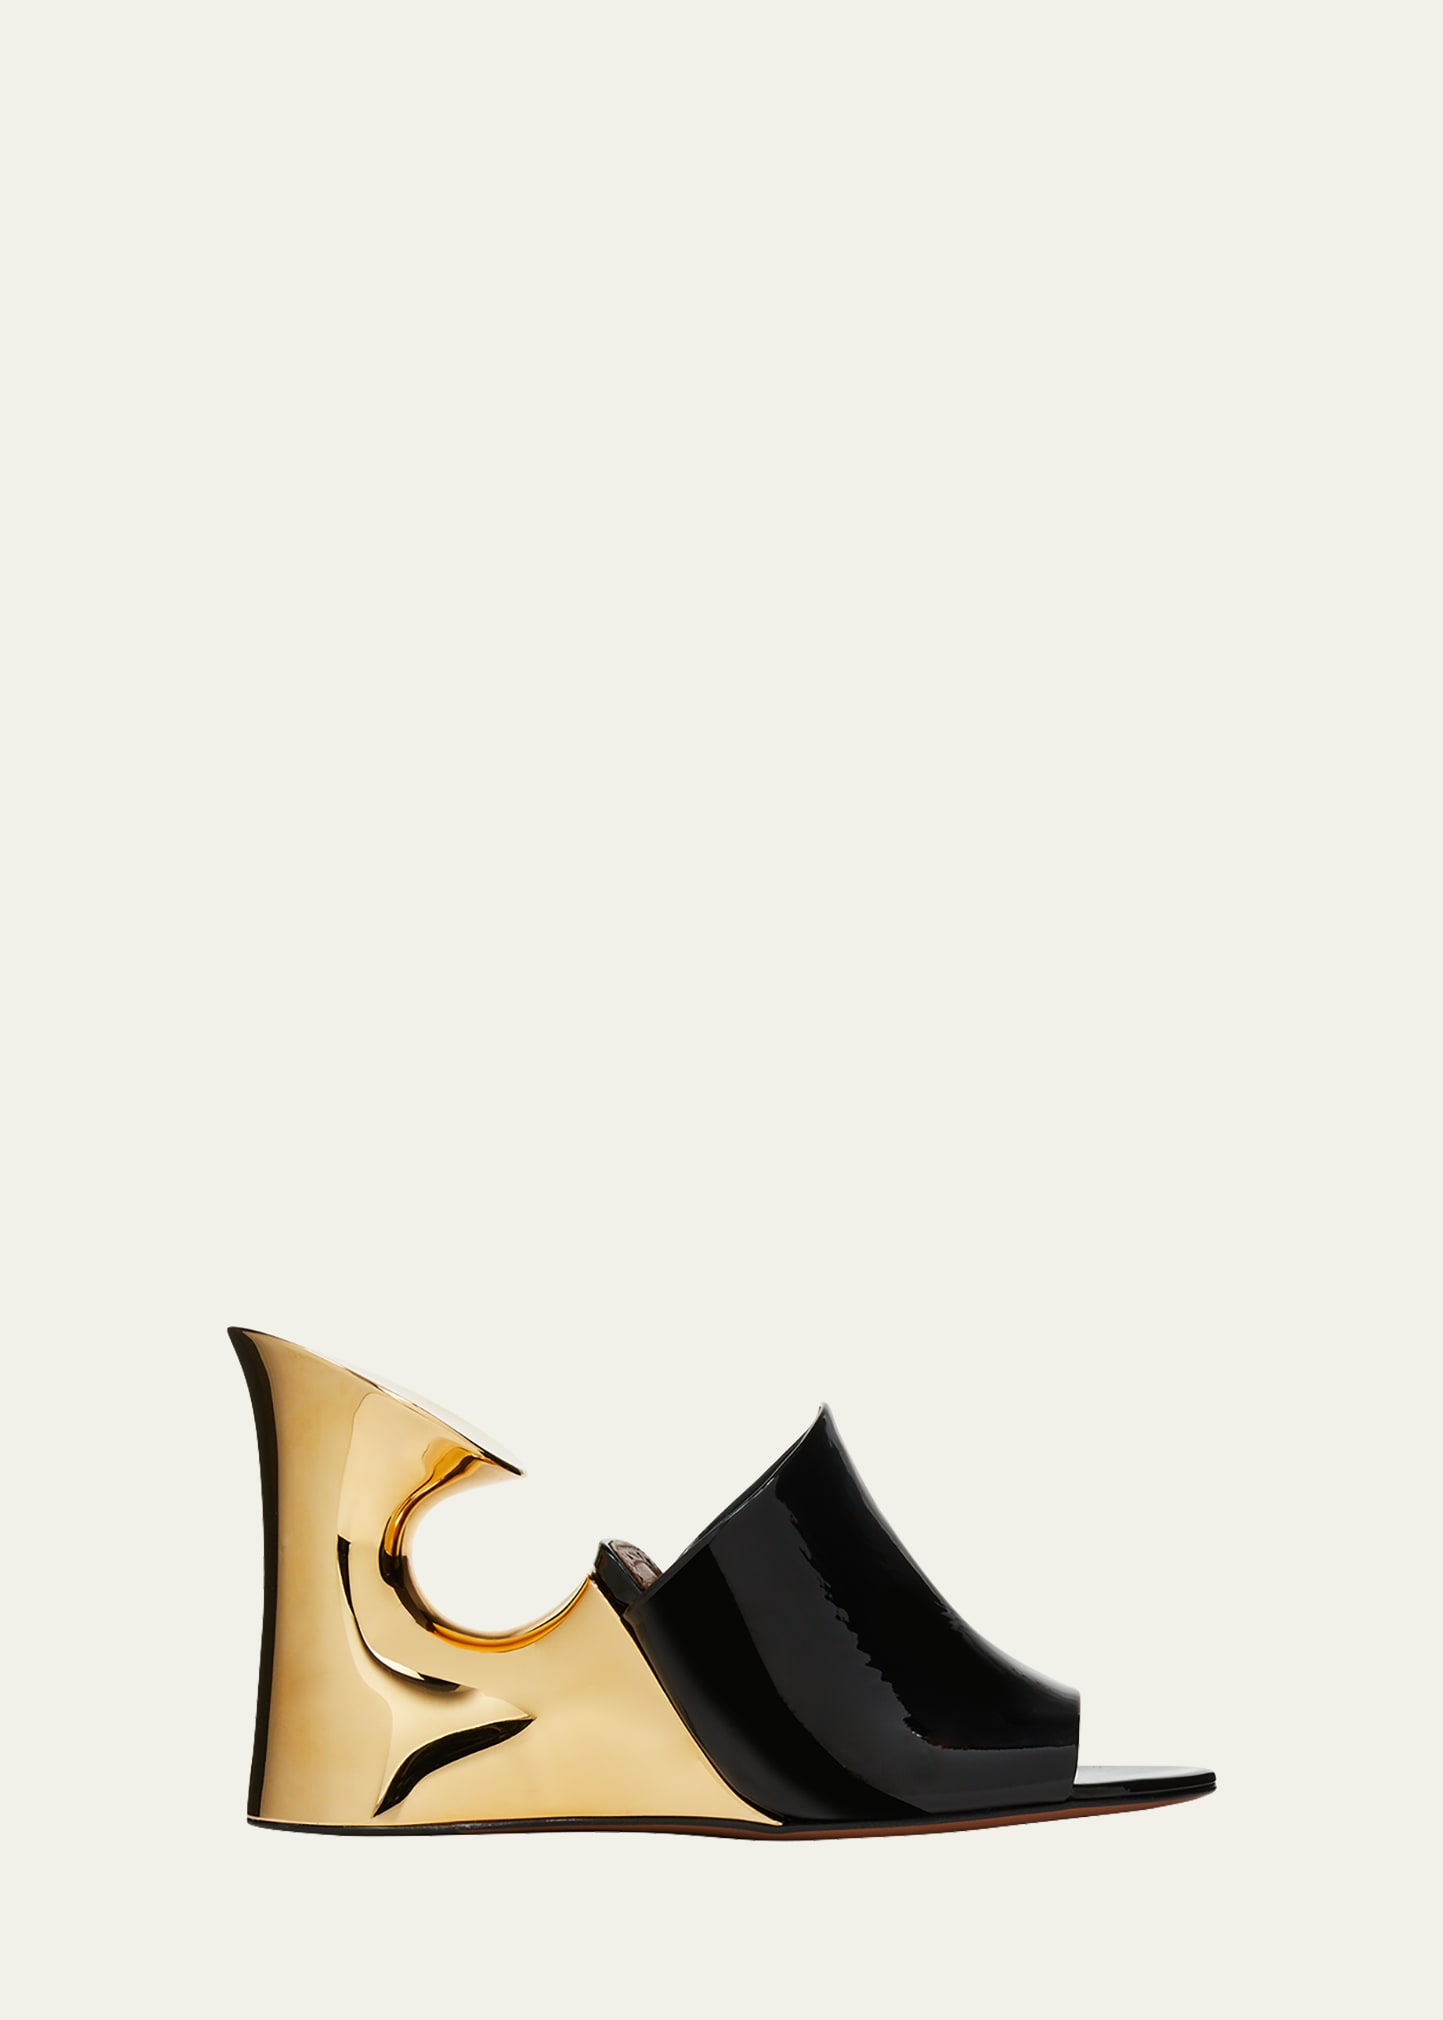 Alaïa La Sculpture Patent Leather Sandals In Or/noir